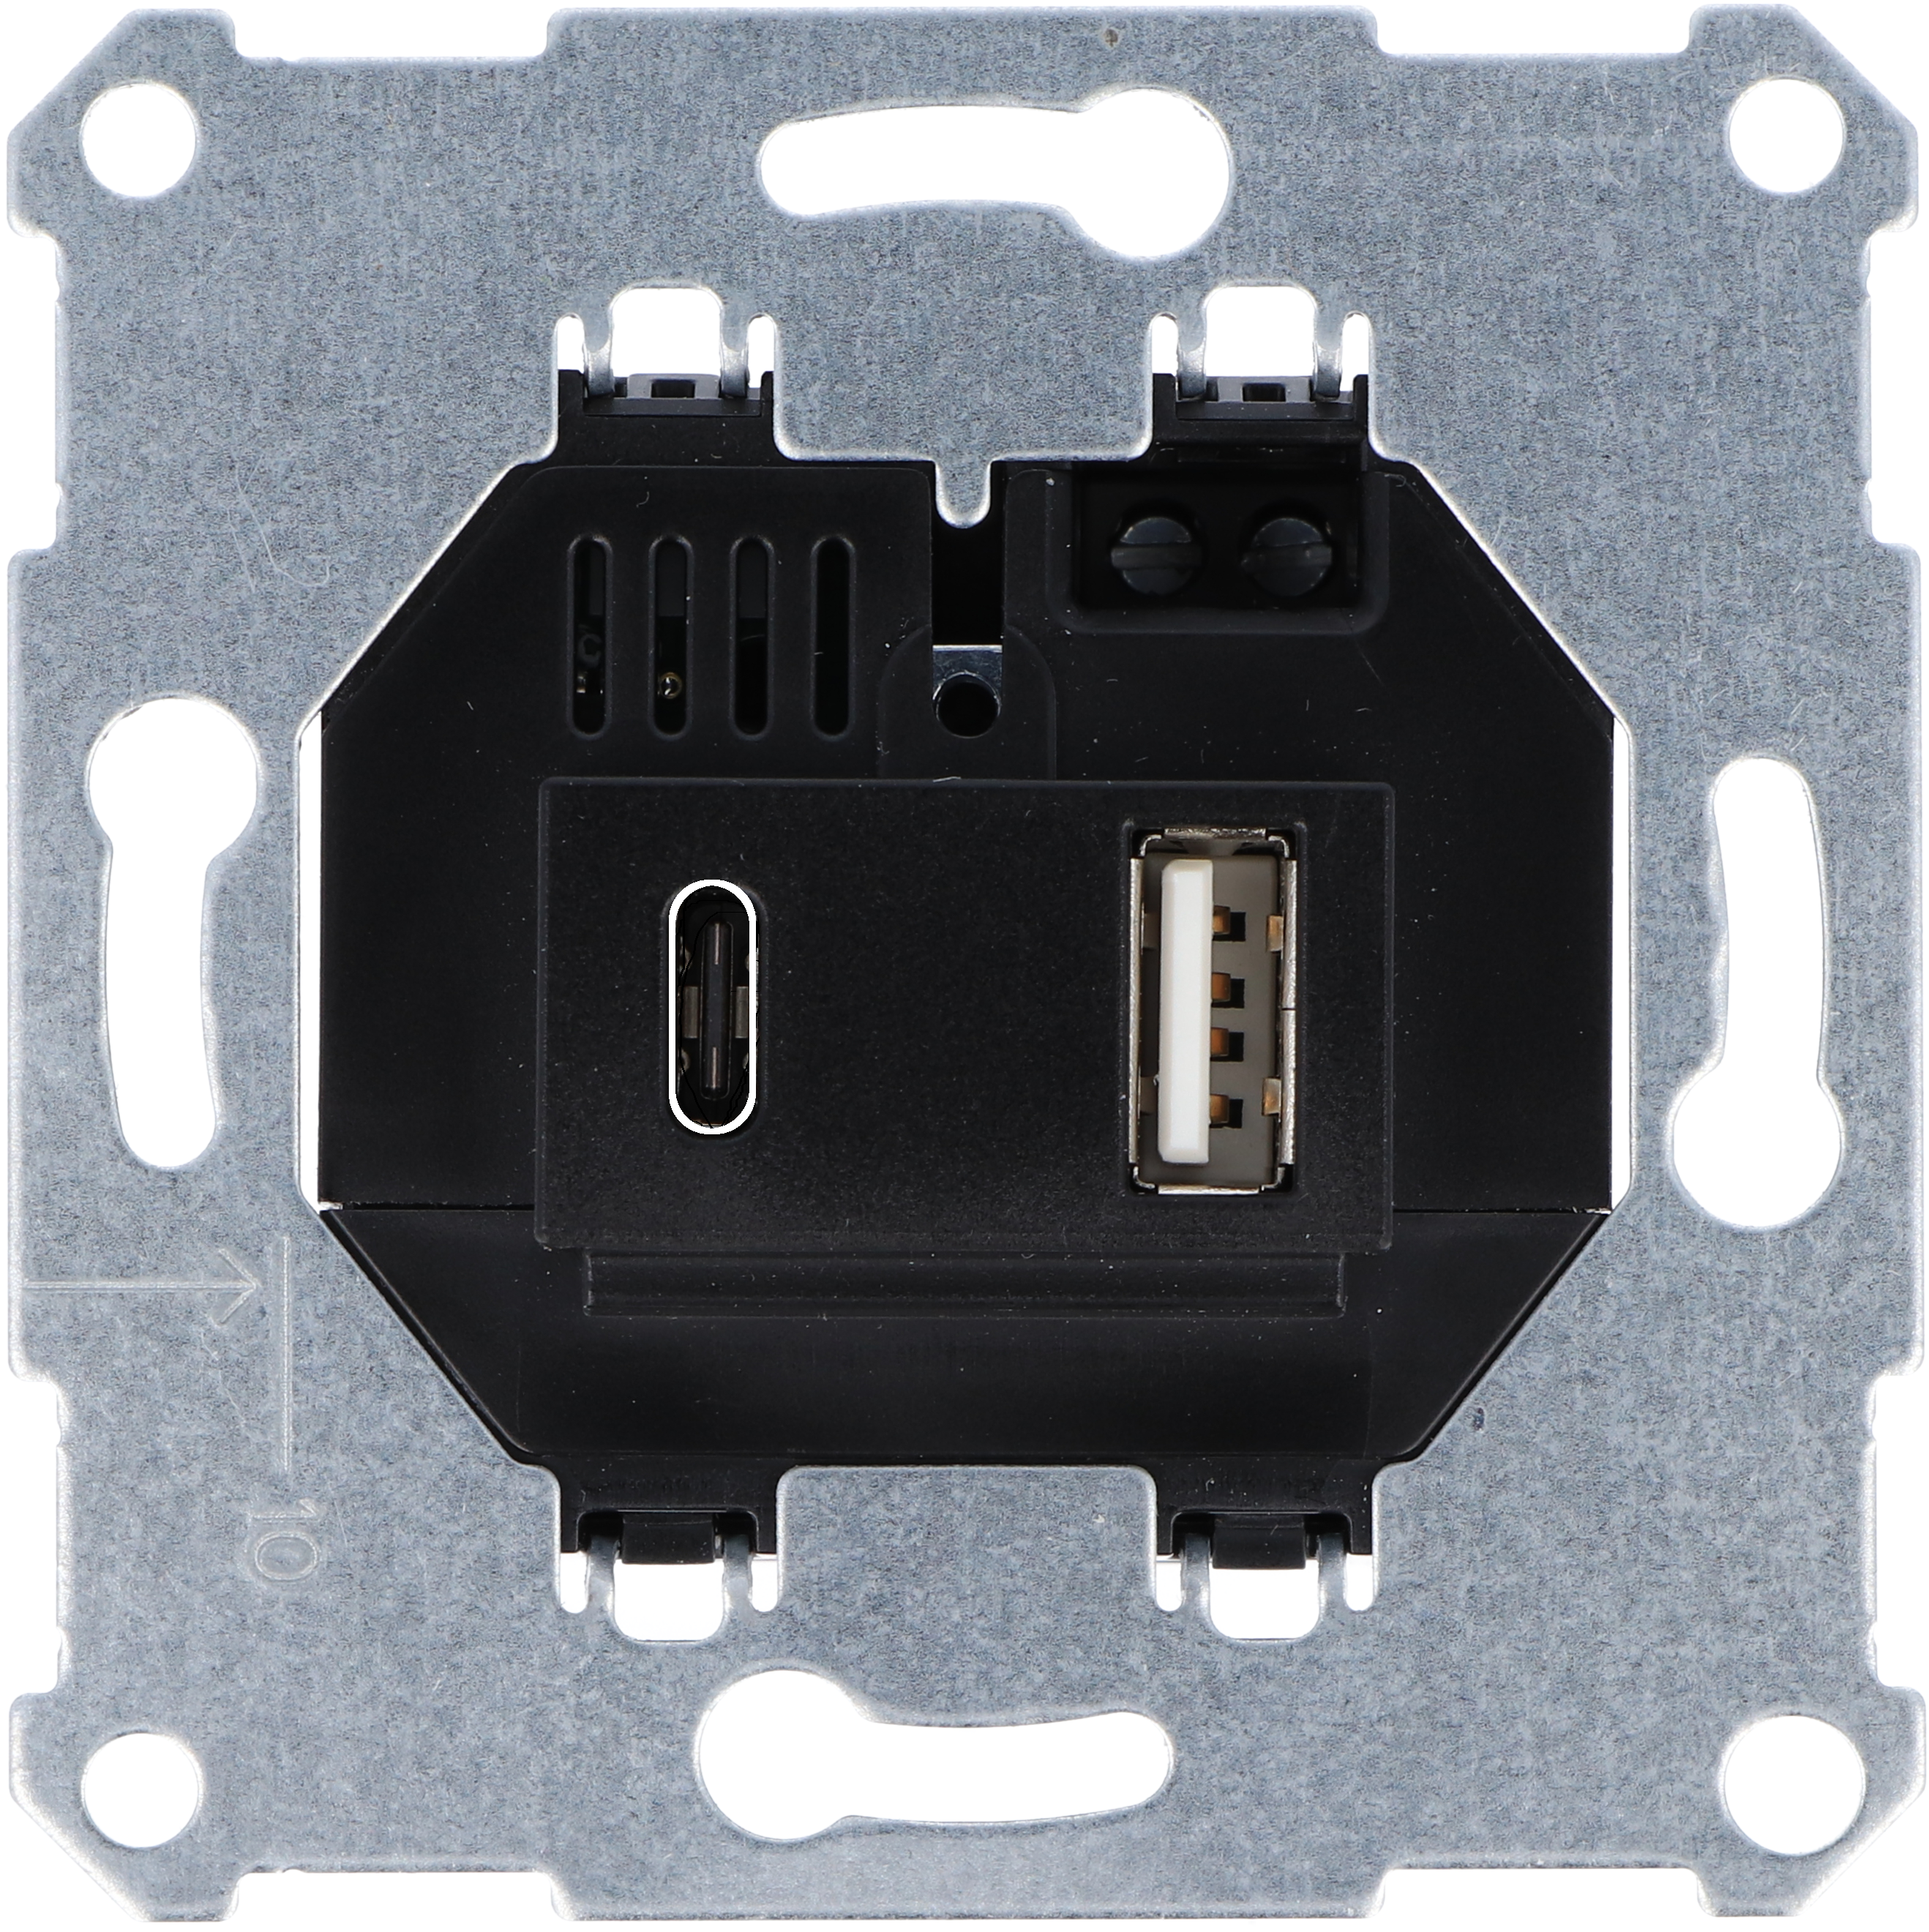 USB-Typ A/C Unterputz Ladesteckdose passend für viele TAE-Abdeckungen des jeweiligen Herstellers